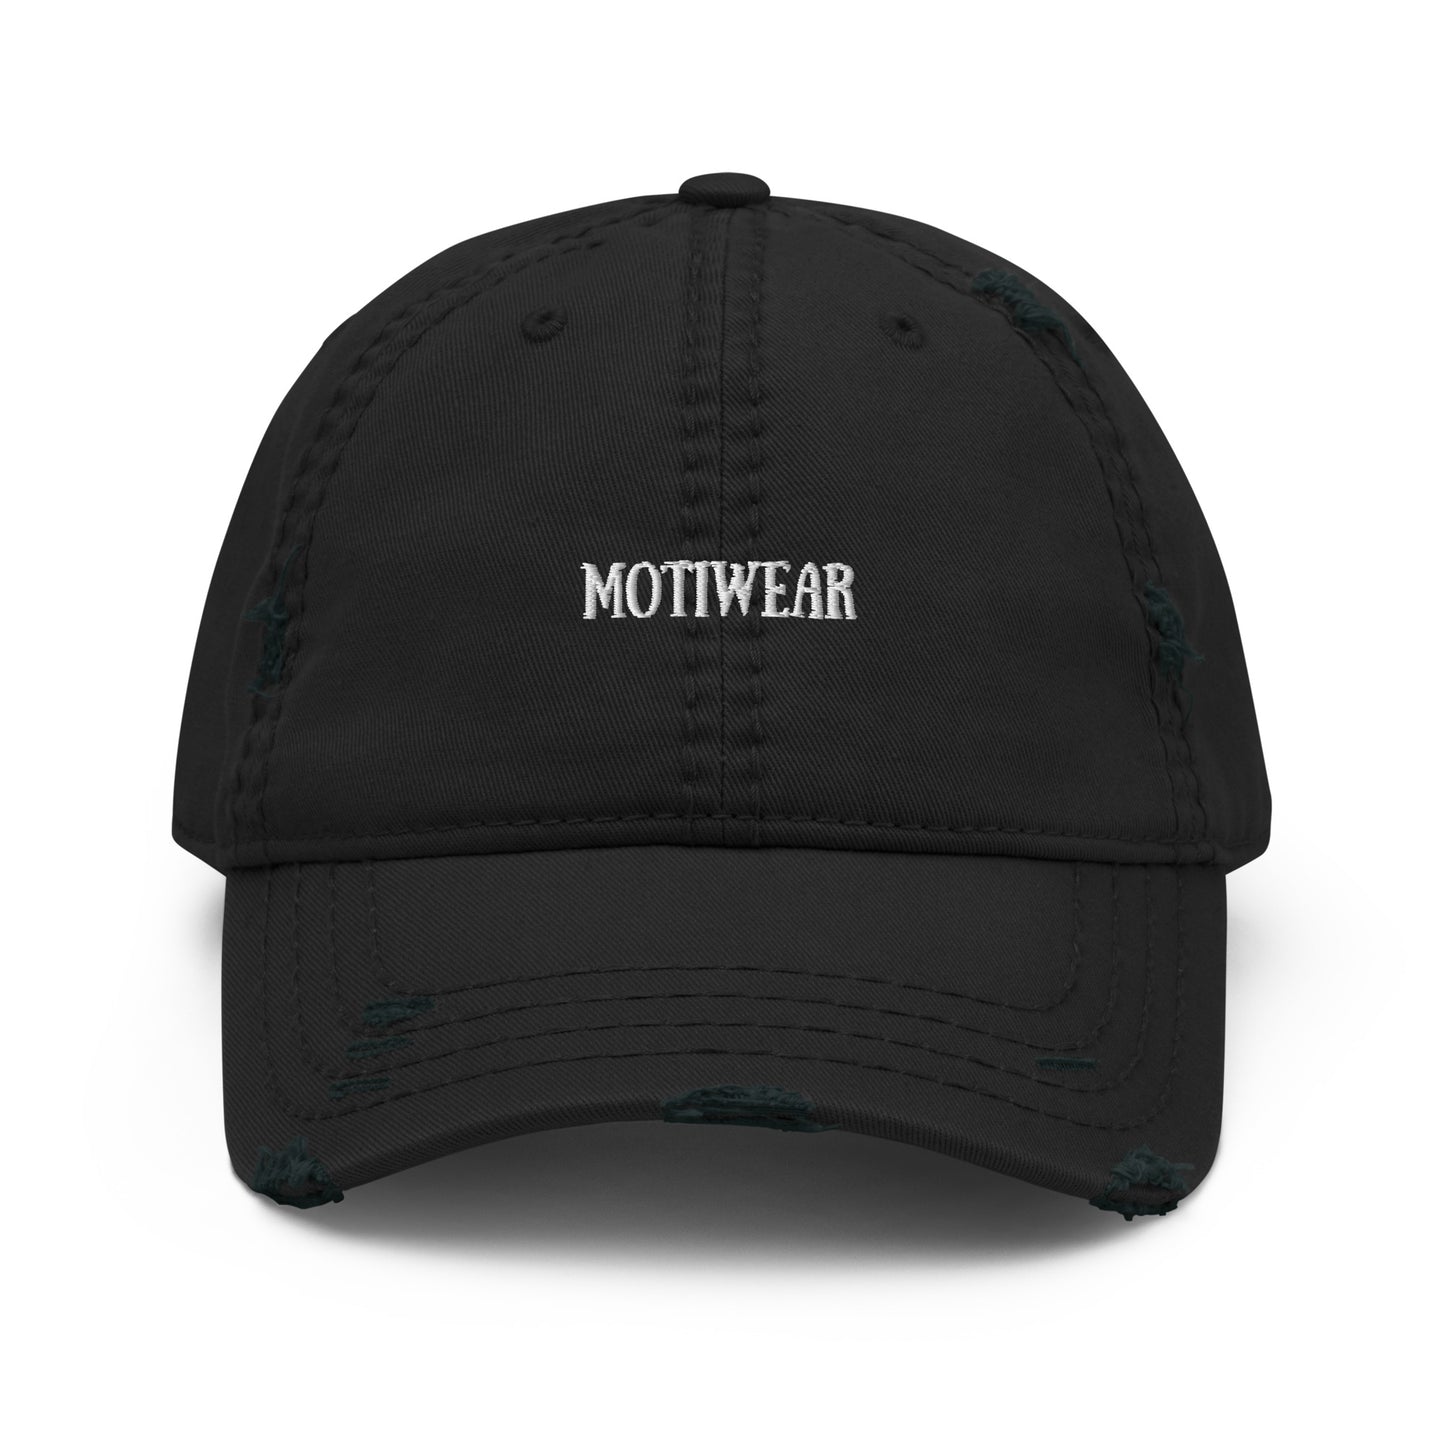 ‘Motiwear’ Hat